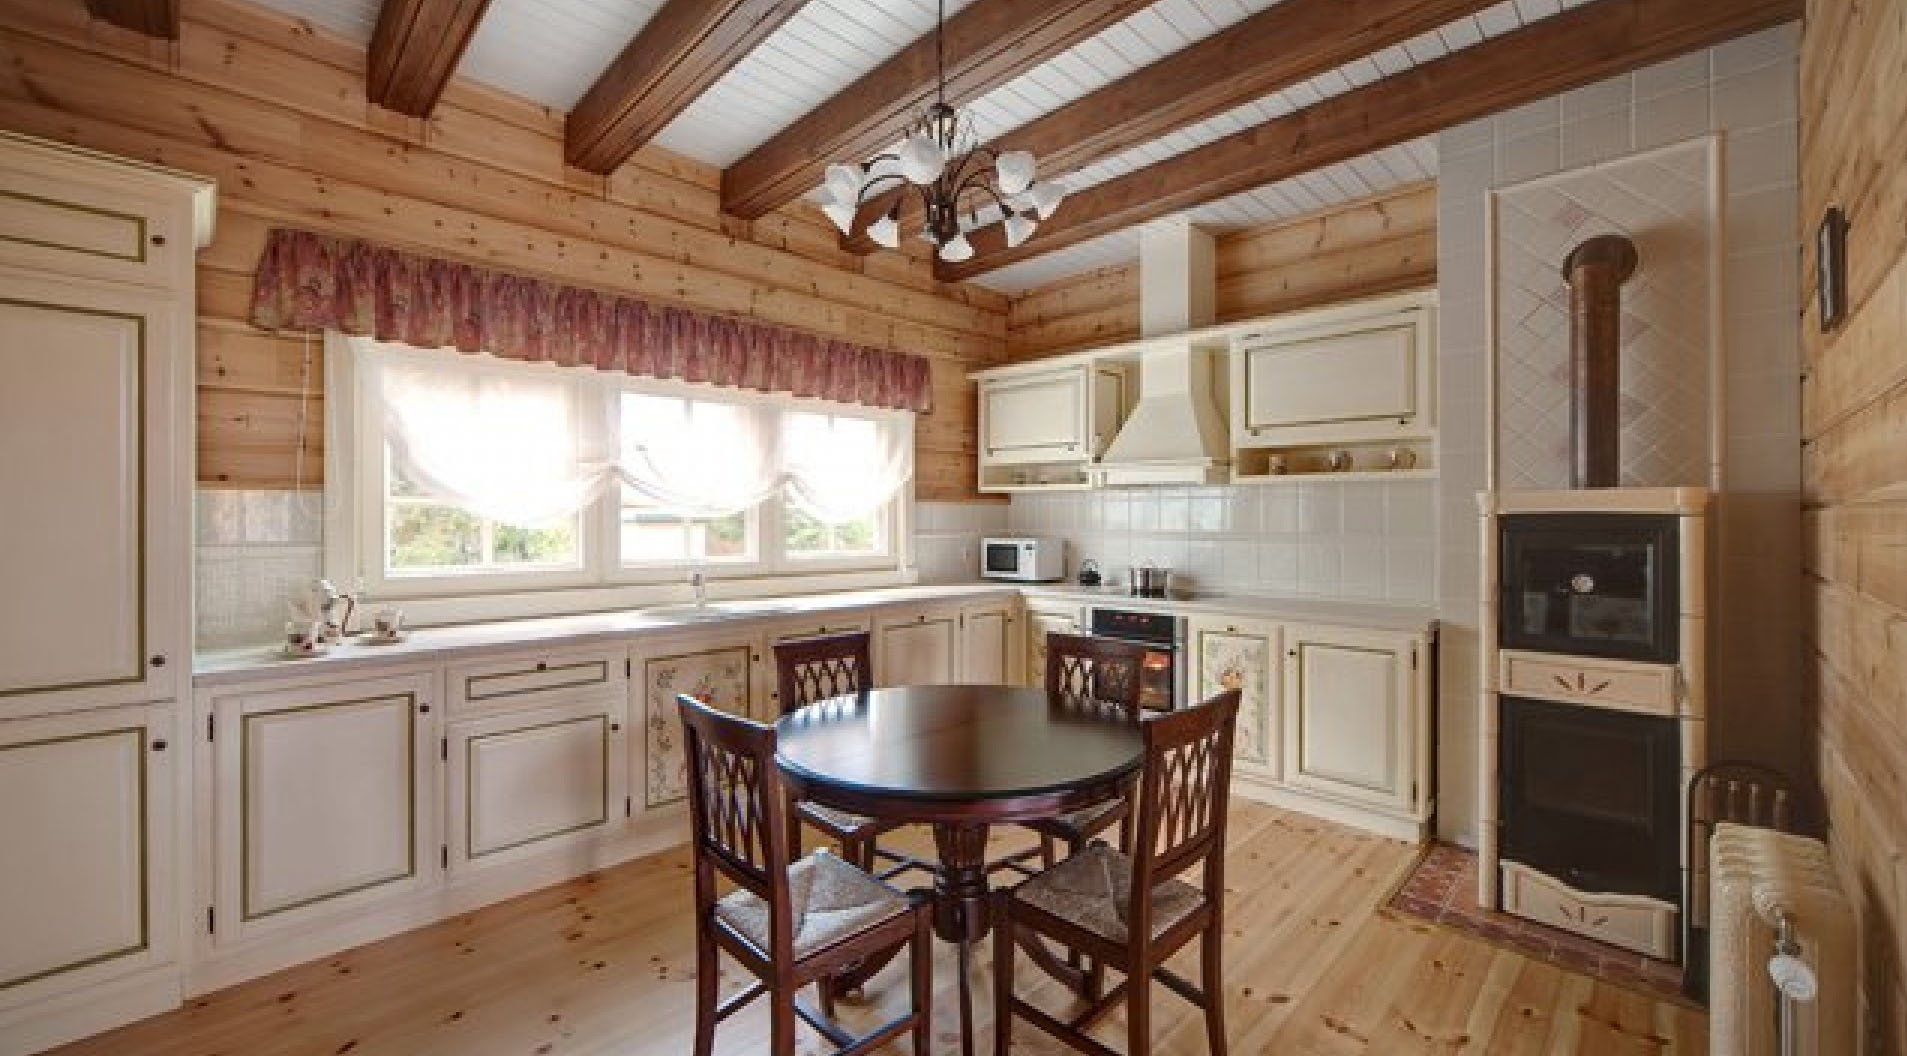 varijanta prekrasnog stila kuhinje u drvenoj kući